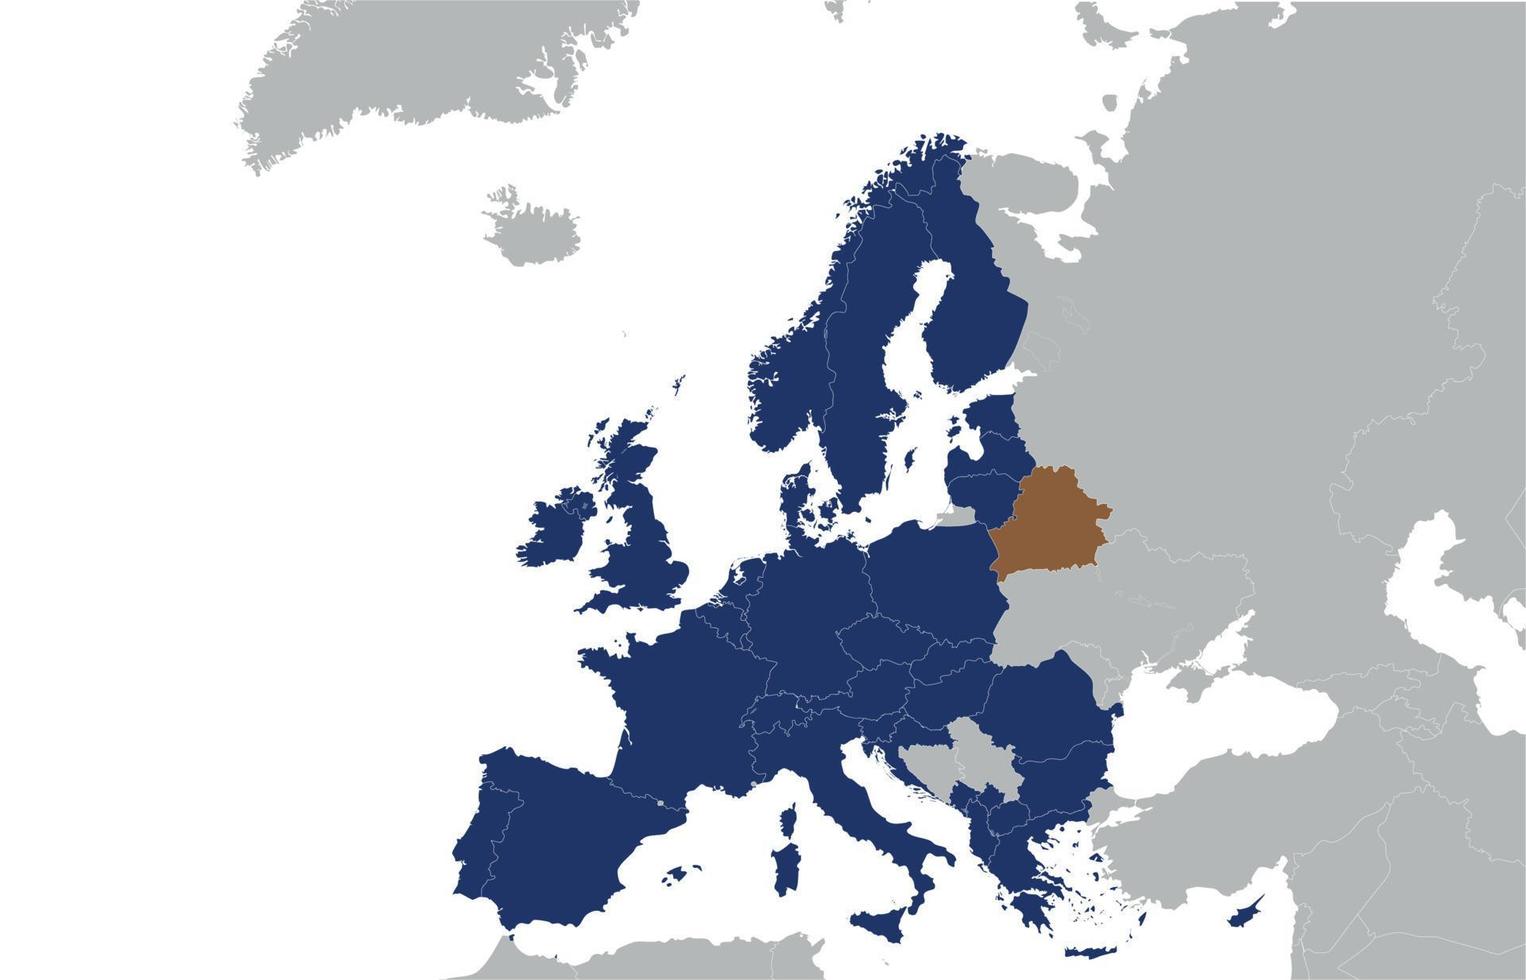 mapa da europa com a bielorrússia na forma de uma mancha marrom e rússia, o conceito de relações políticas. bielorrússia na forma de merda entre países. ilustração vetorial vetor